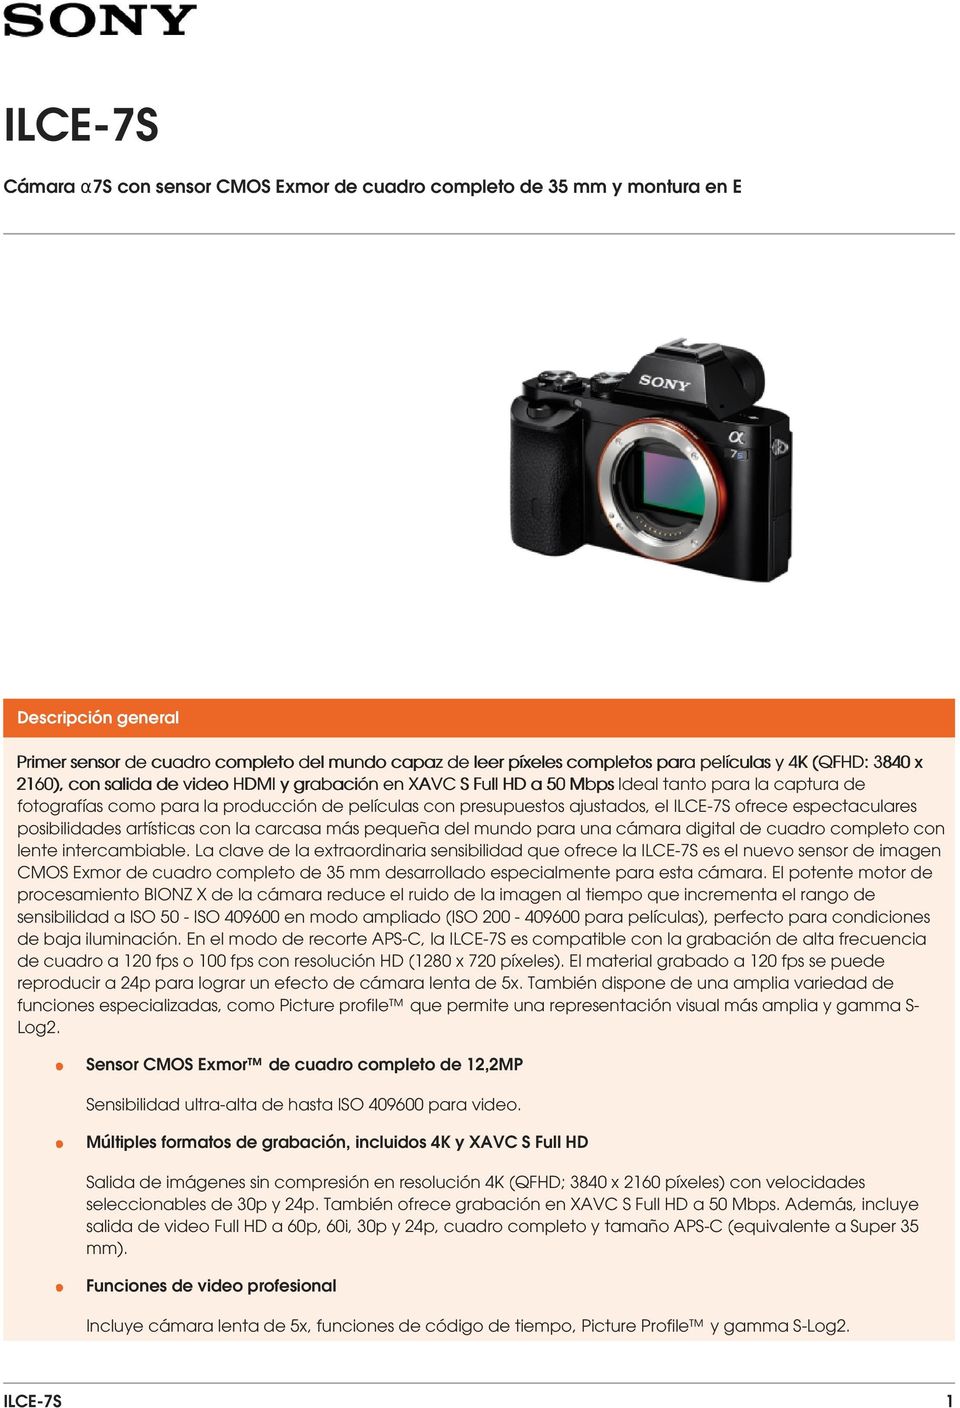 ILCE-7S ofrece espectaculares posibilidades artísticas con la carcasa más pequeña del mundo para una cámara digital de cuadro completo con lente intercambiable.